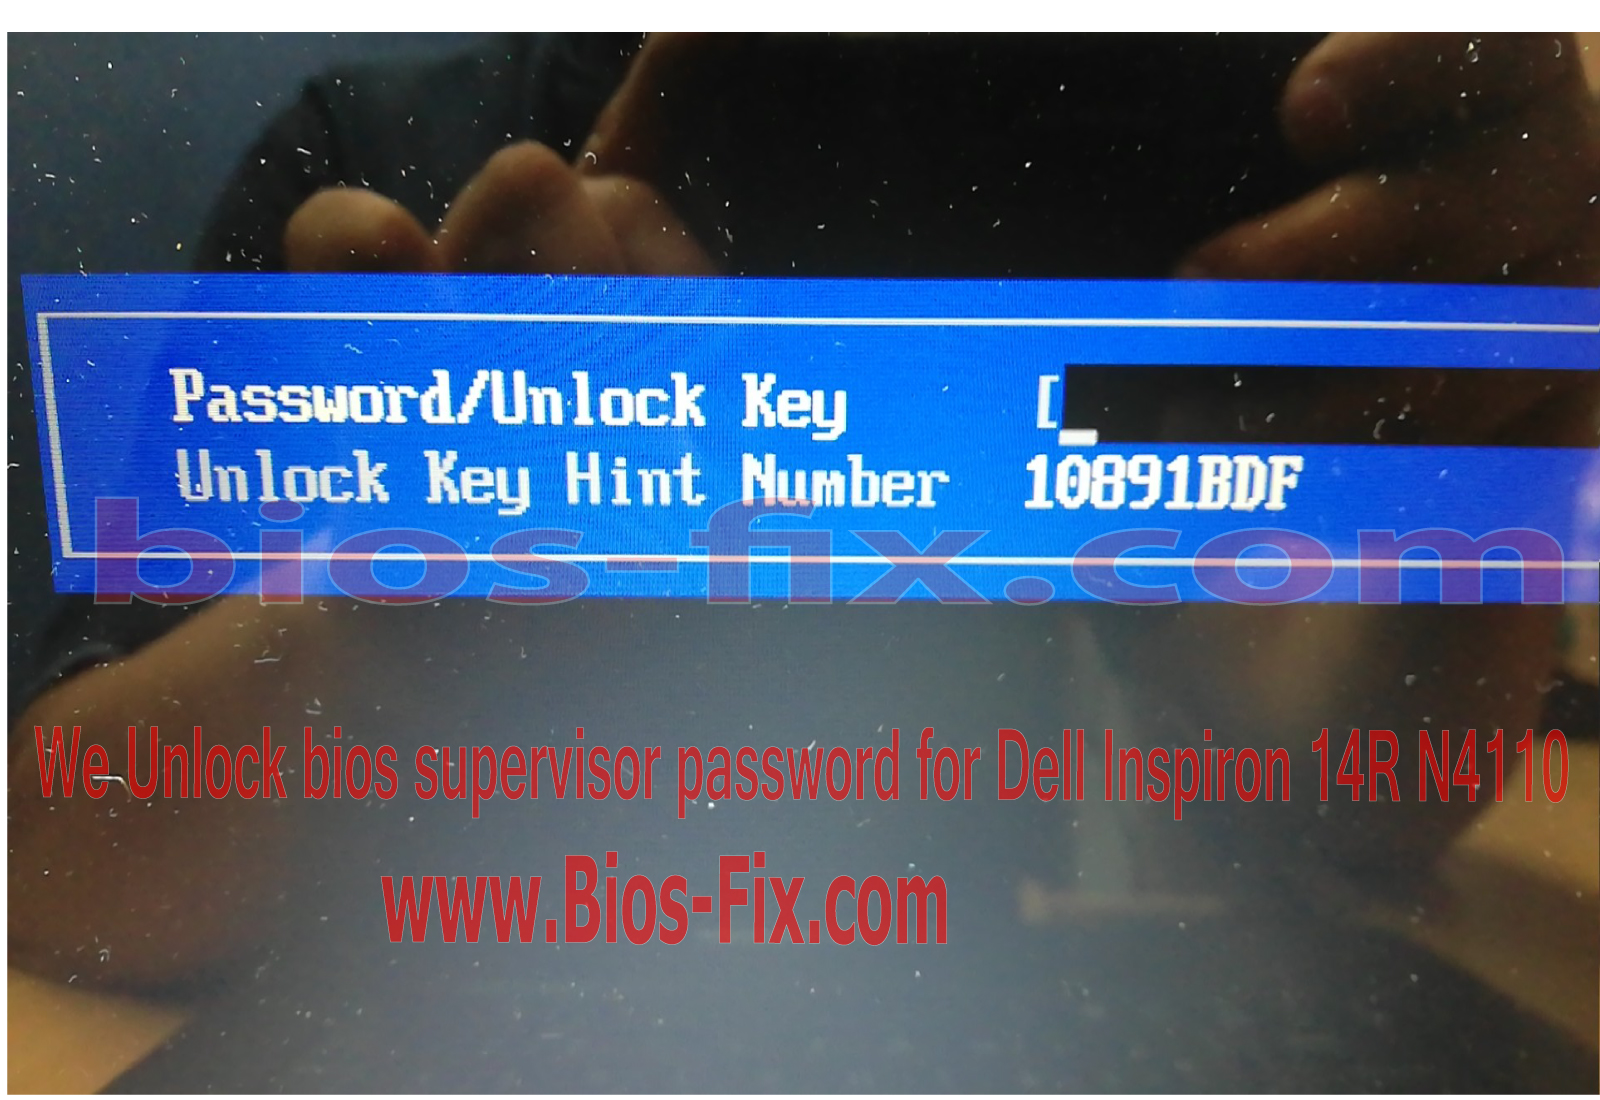 Unlock-bios-supervisor-password-for-Dell-Inspiron-14R-N4110.jpg